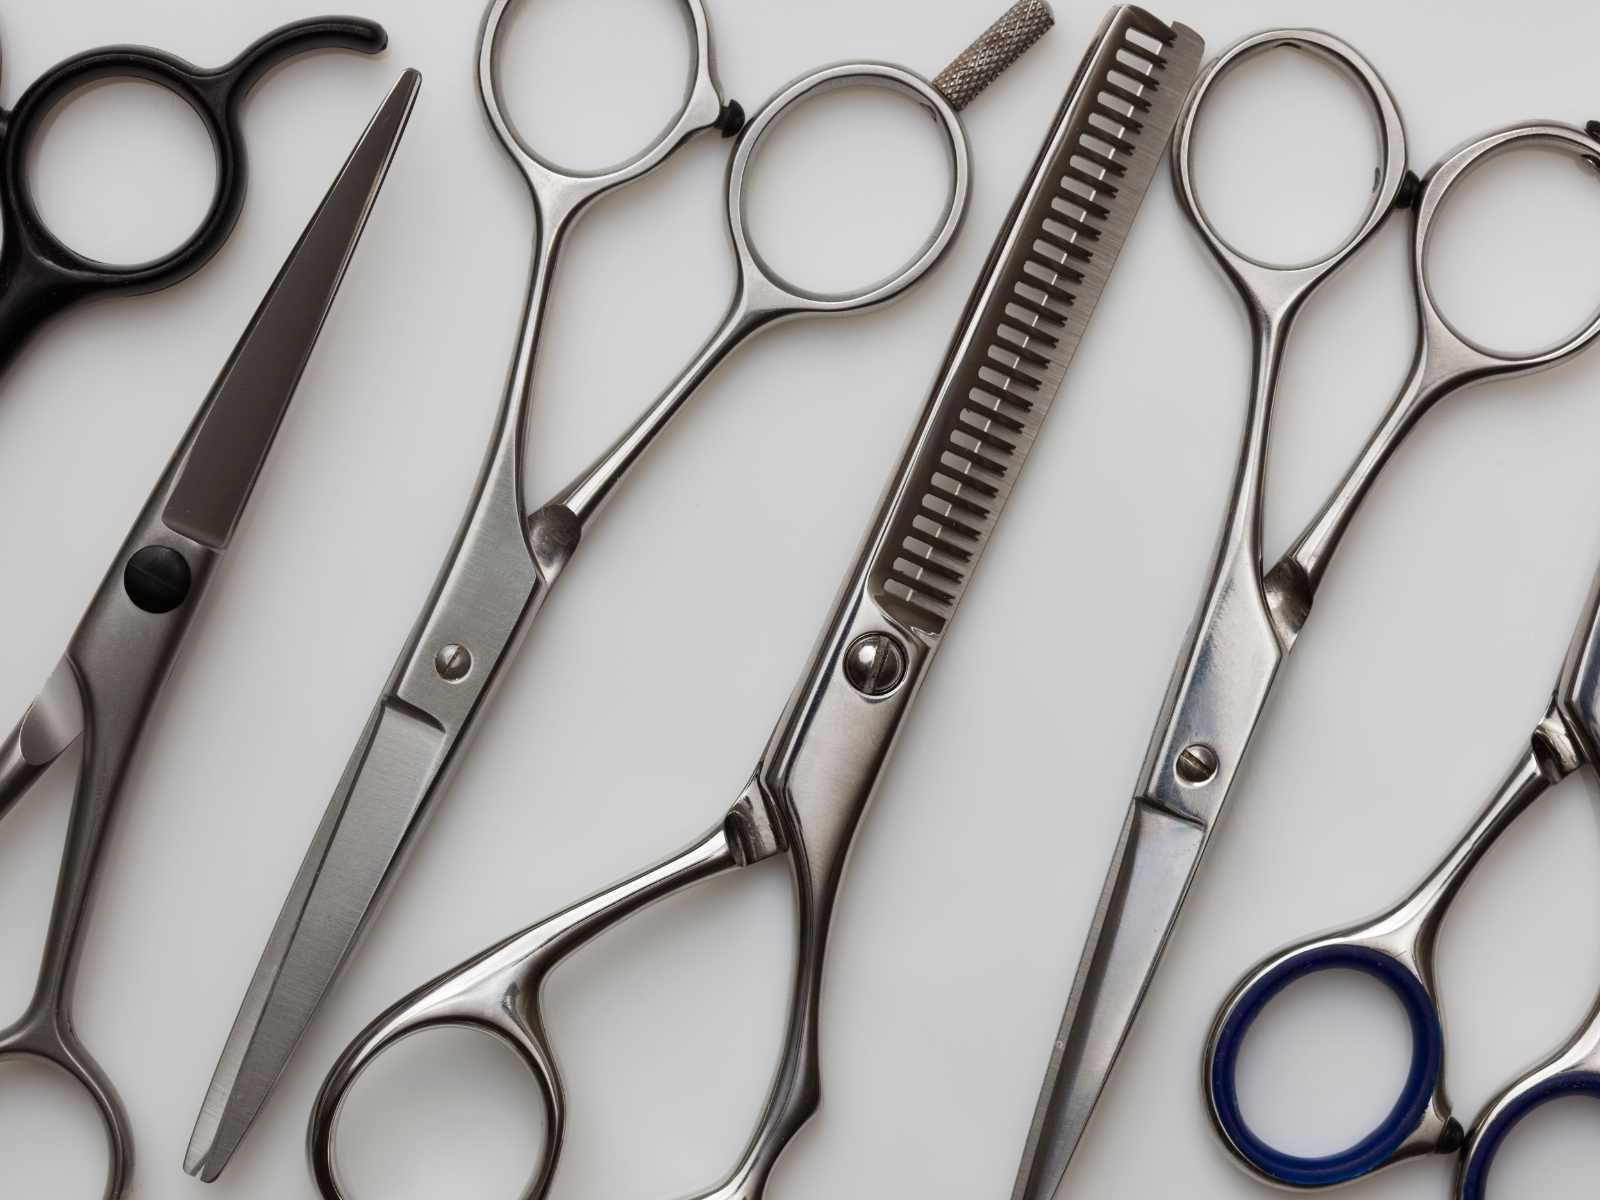 The Top Ten Best Hairdressing Scissor Sets in Canada